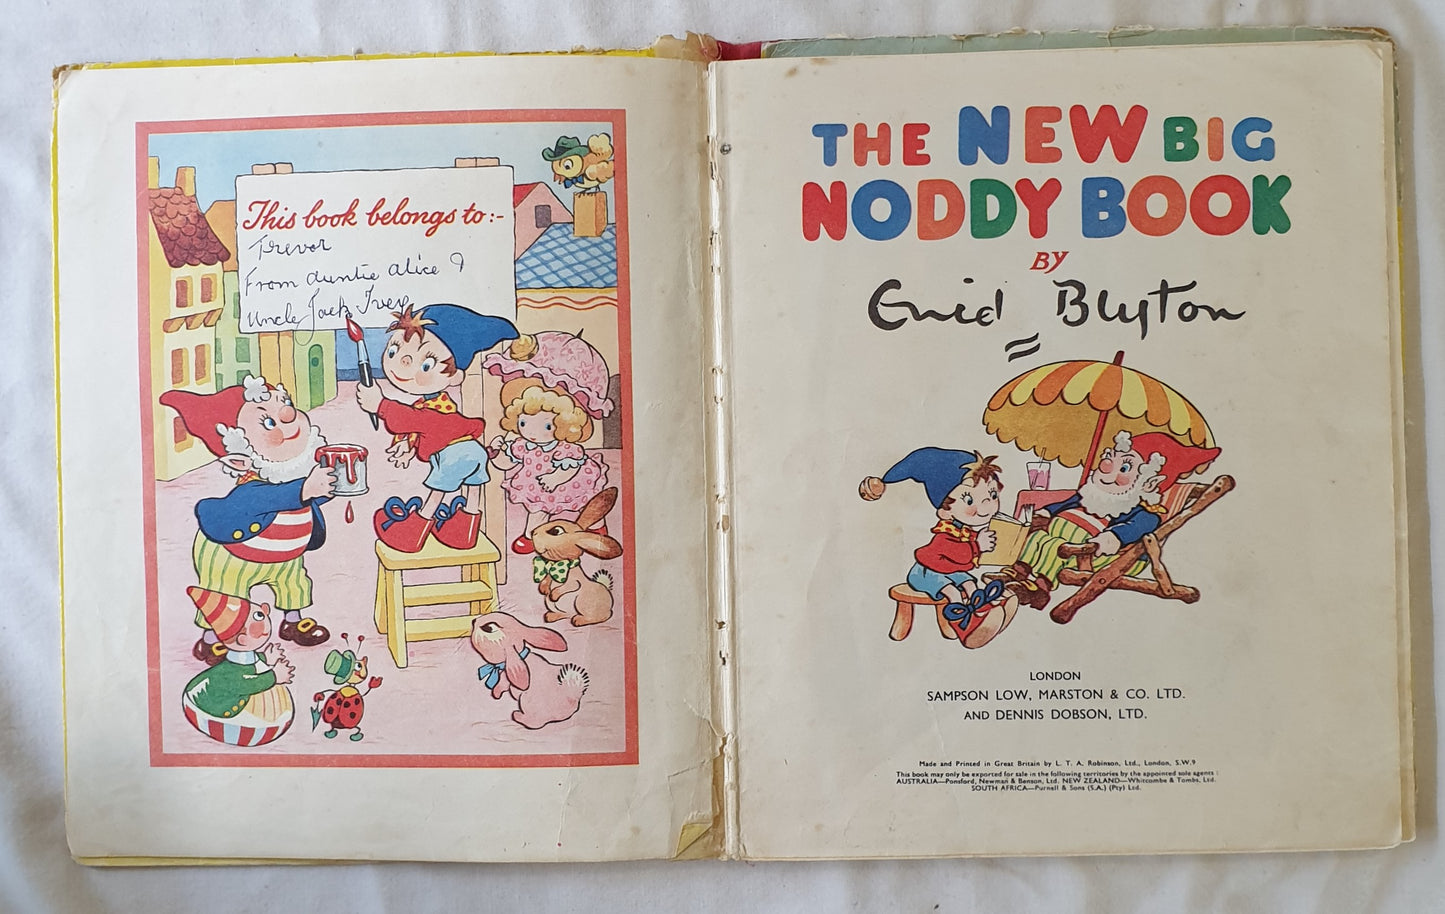 The New Big Noddy Book by Enid Blyton